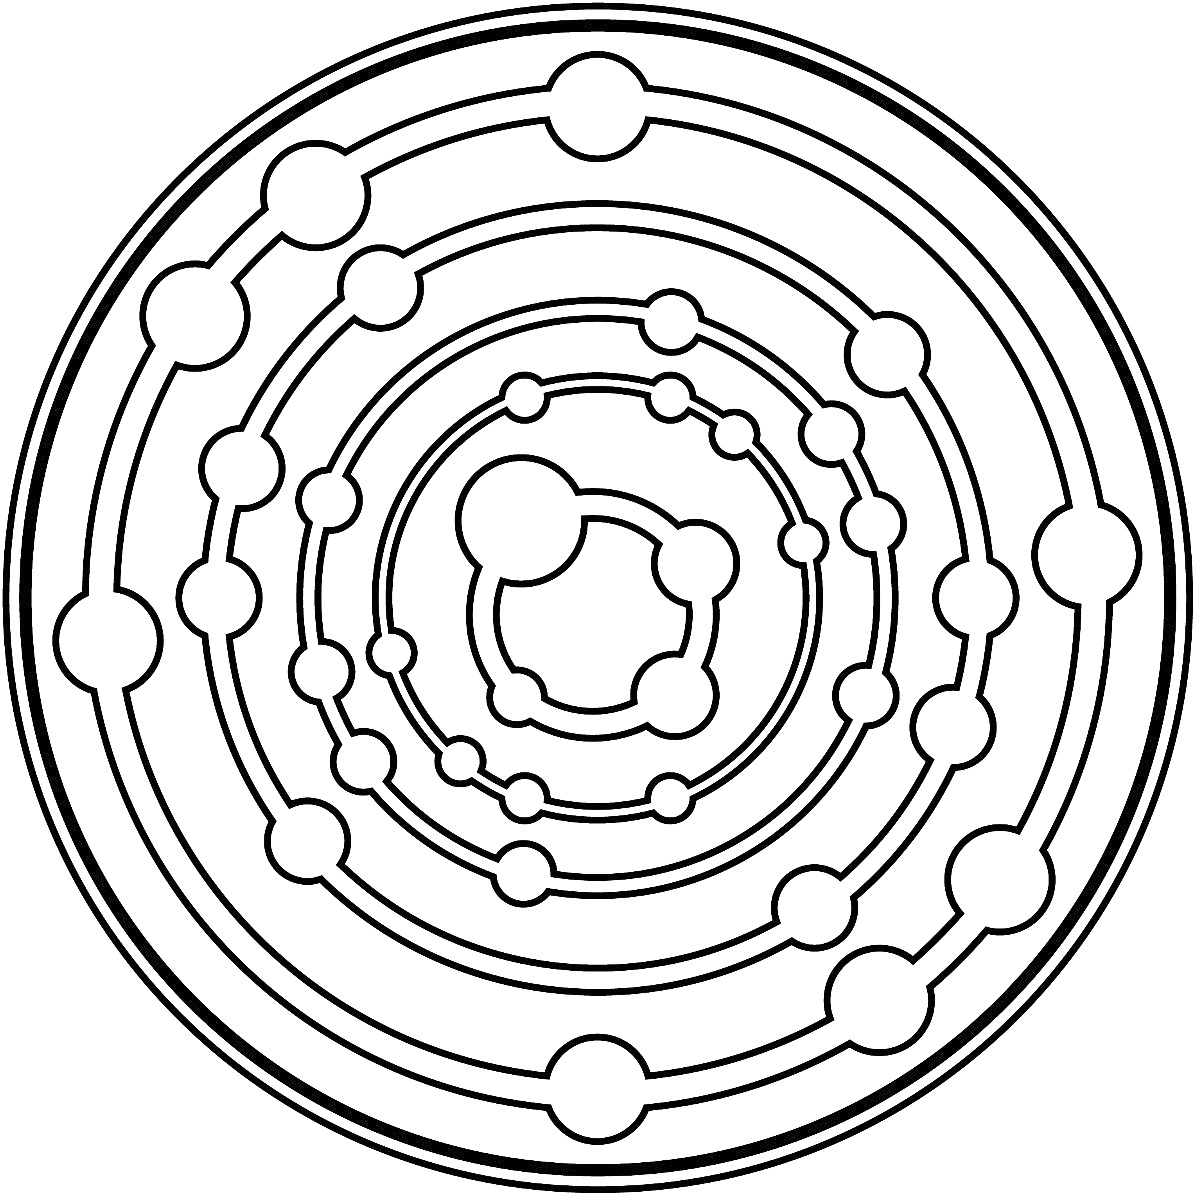 Мандала с концентрическими кругами и круглыми элементами.